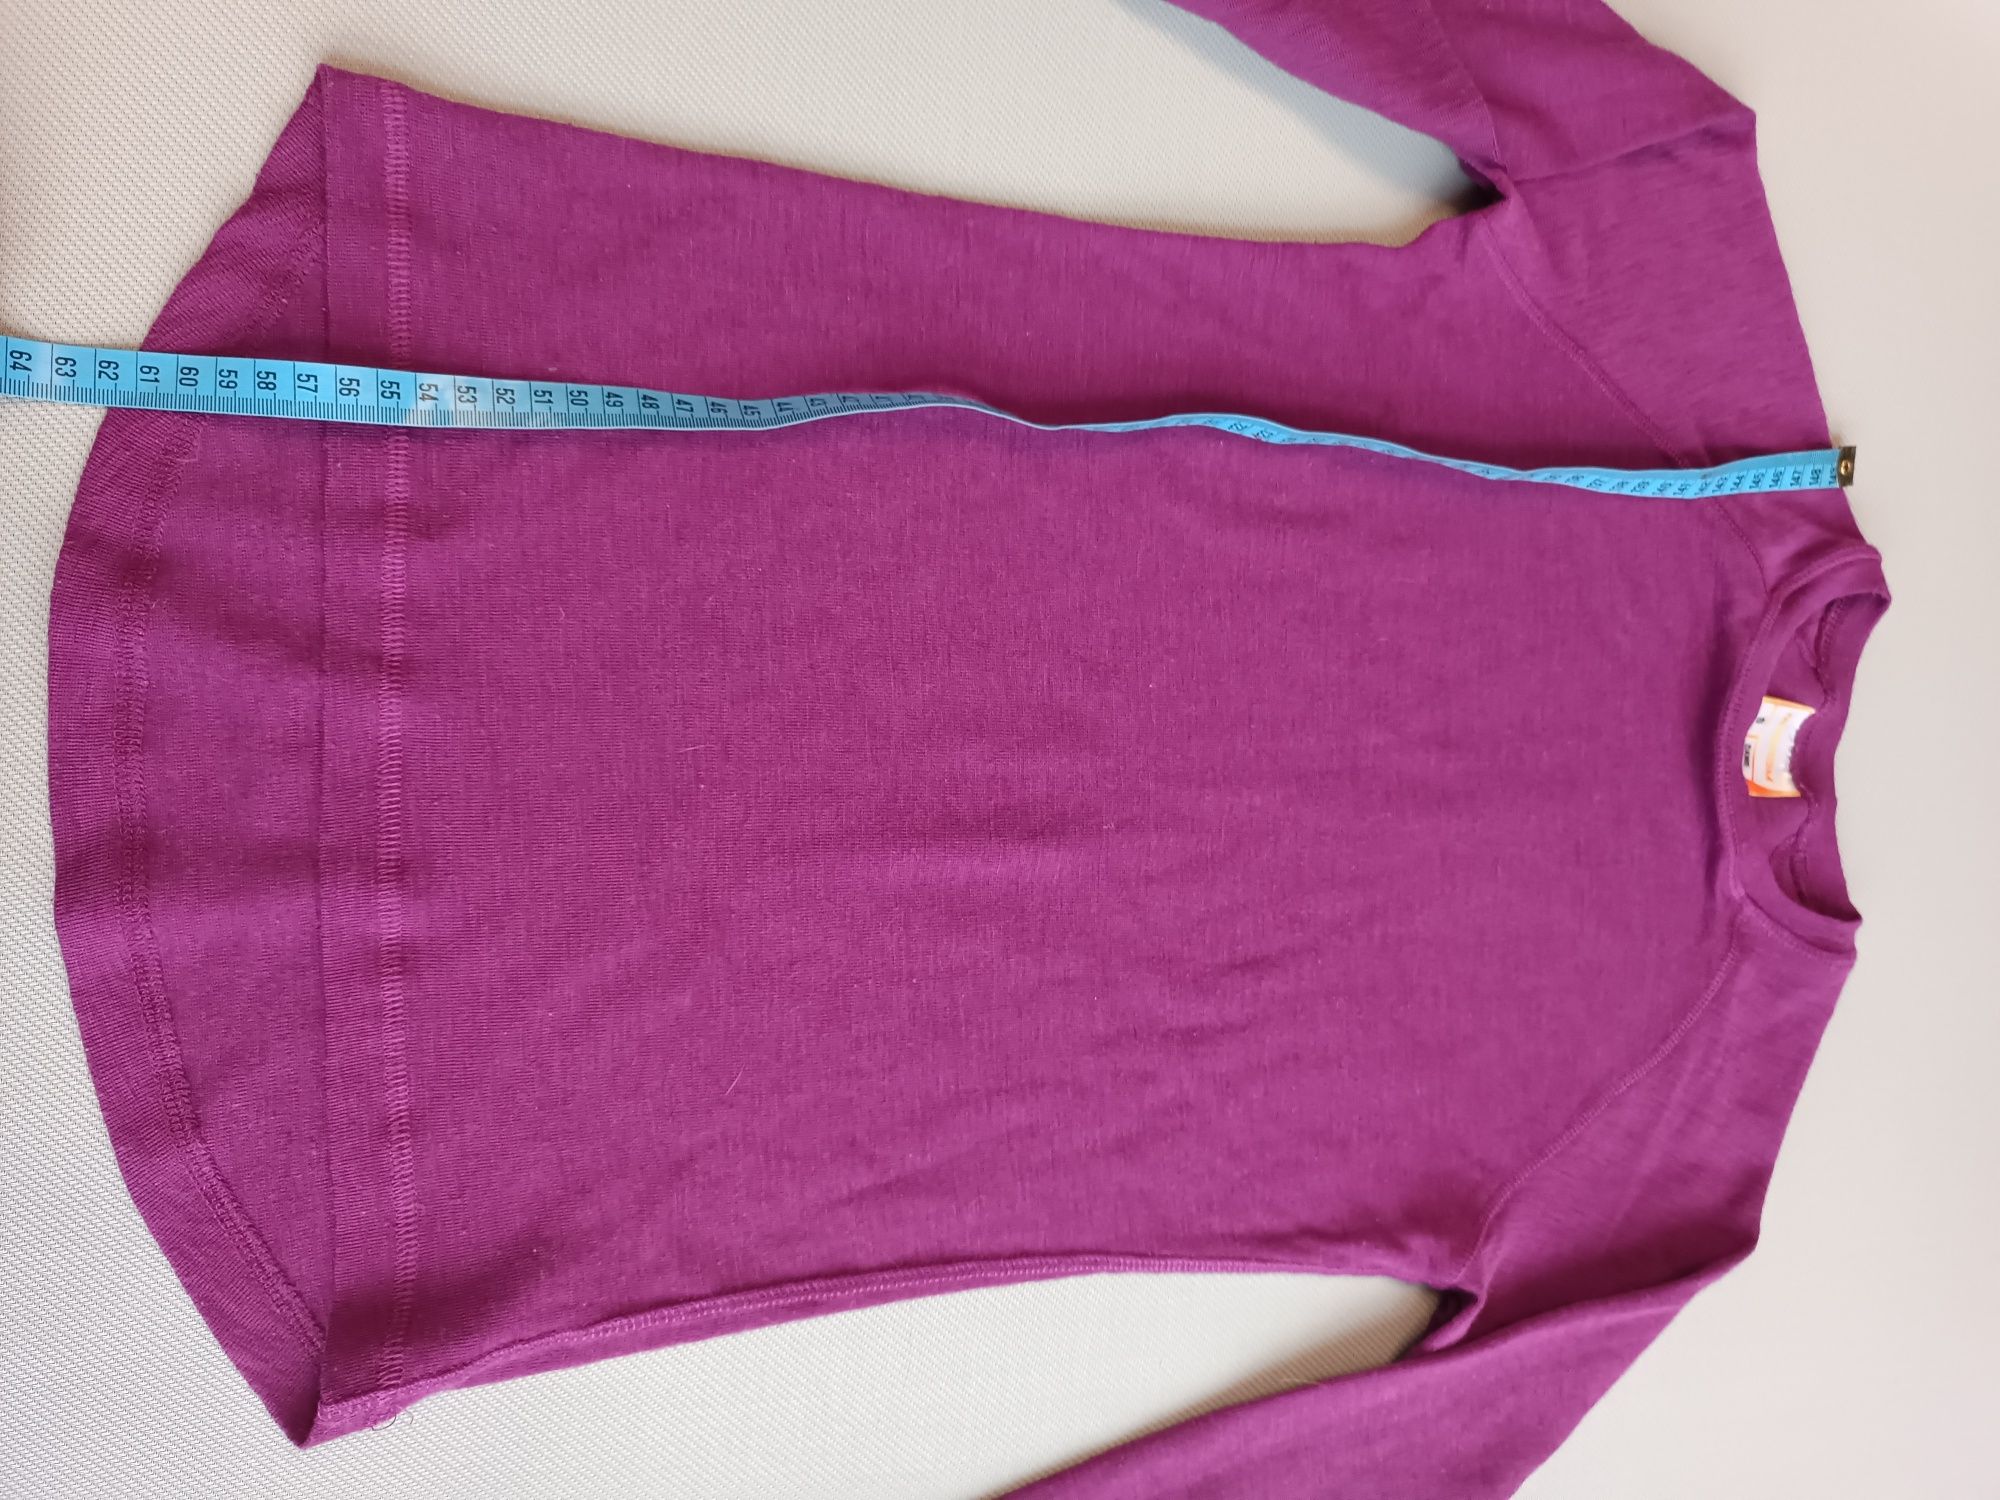 Norheim koszulka fioletowa 50% wełna merino rozmiar S damska